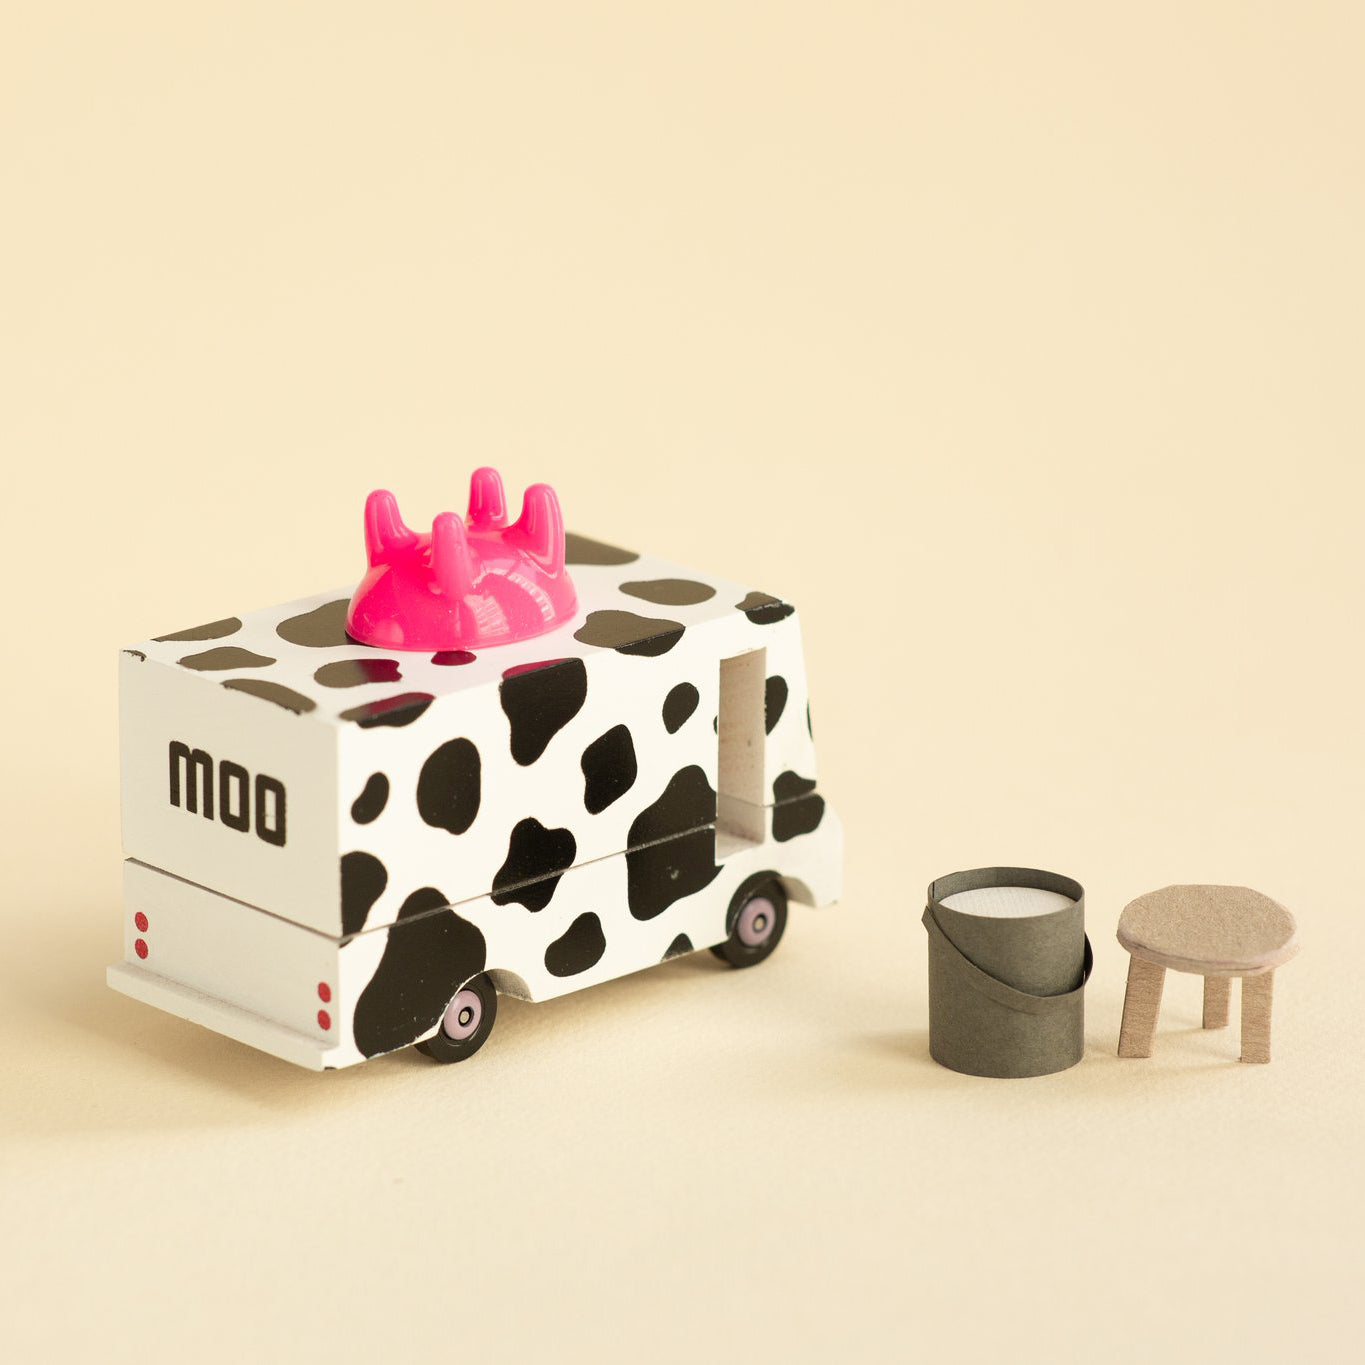 Candyvan 'Moo' Milk Van